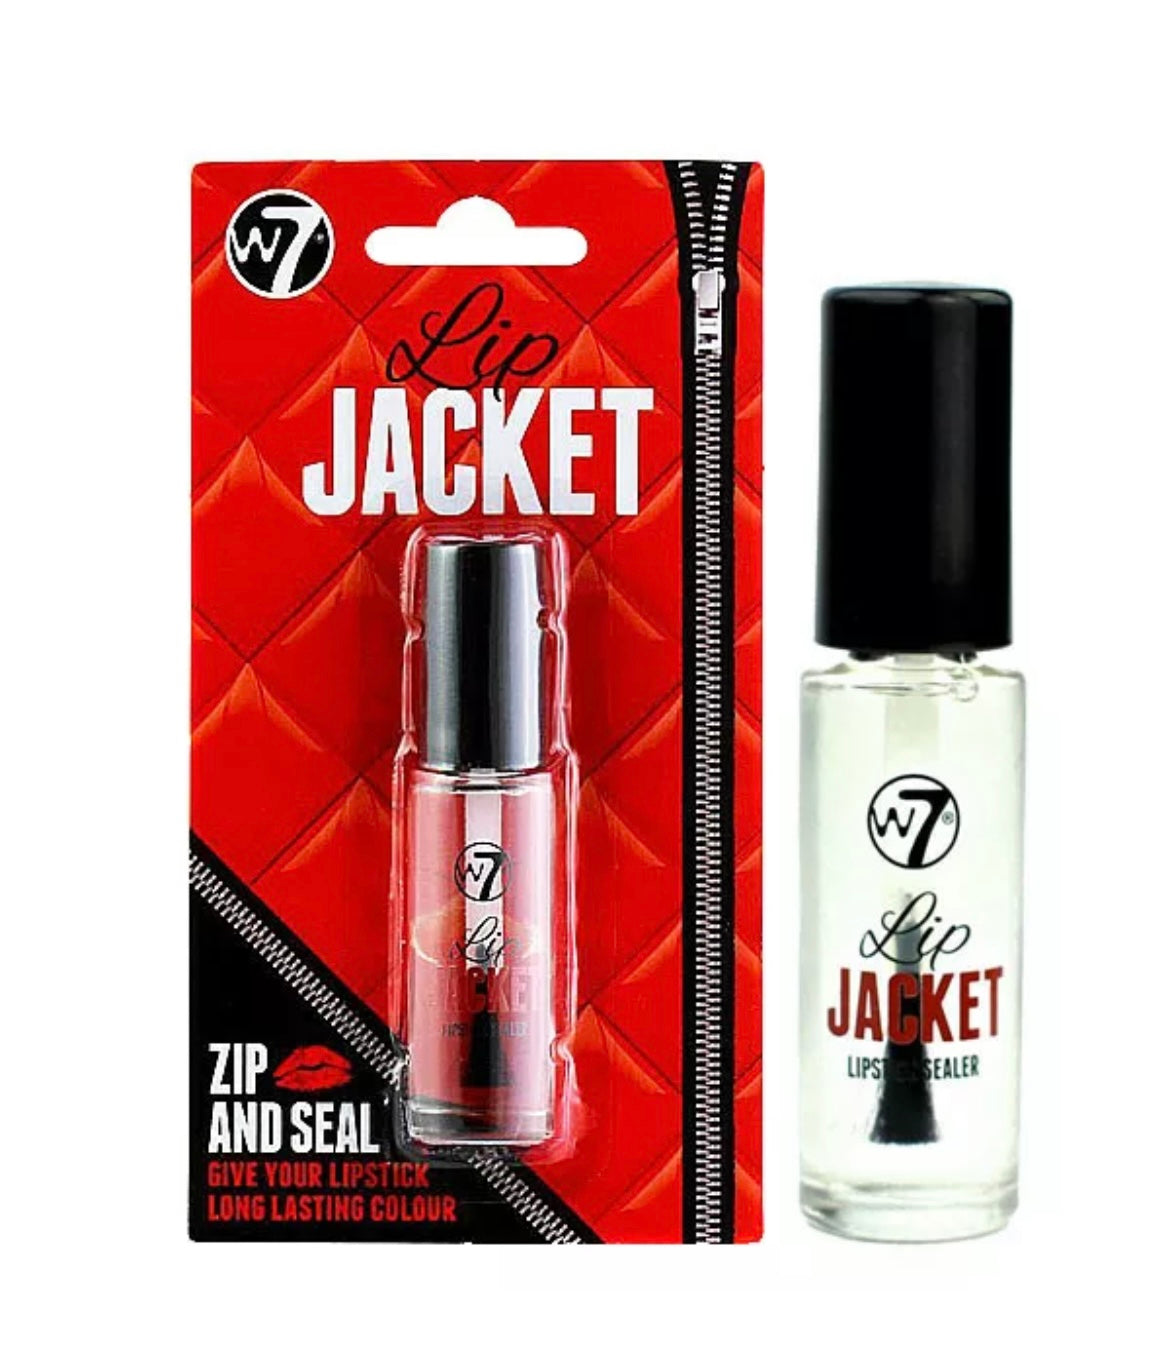 W7 Lip Jacket Lipstick & Lipgloss Setter